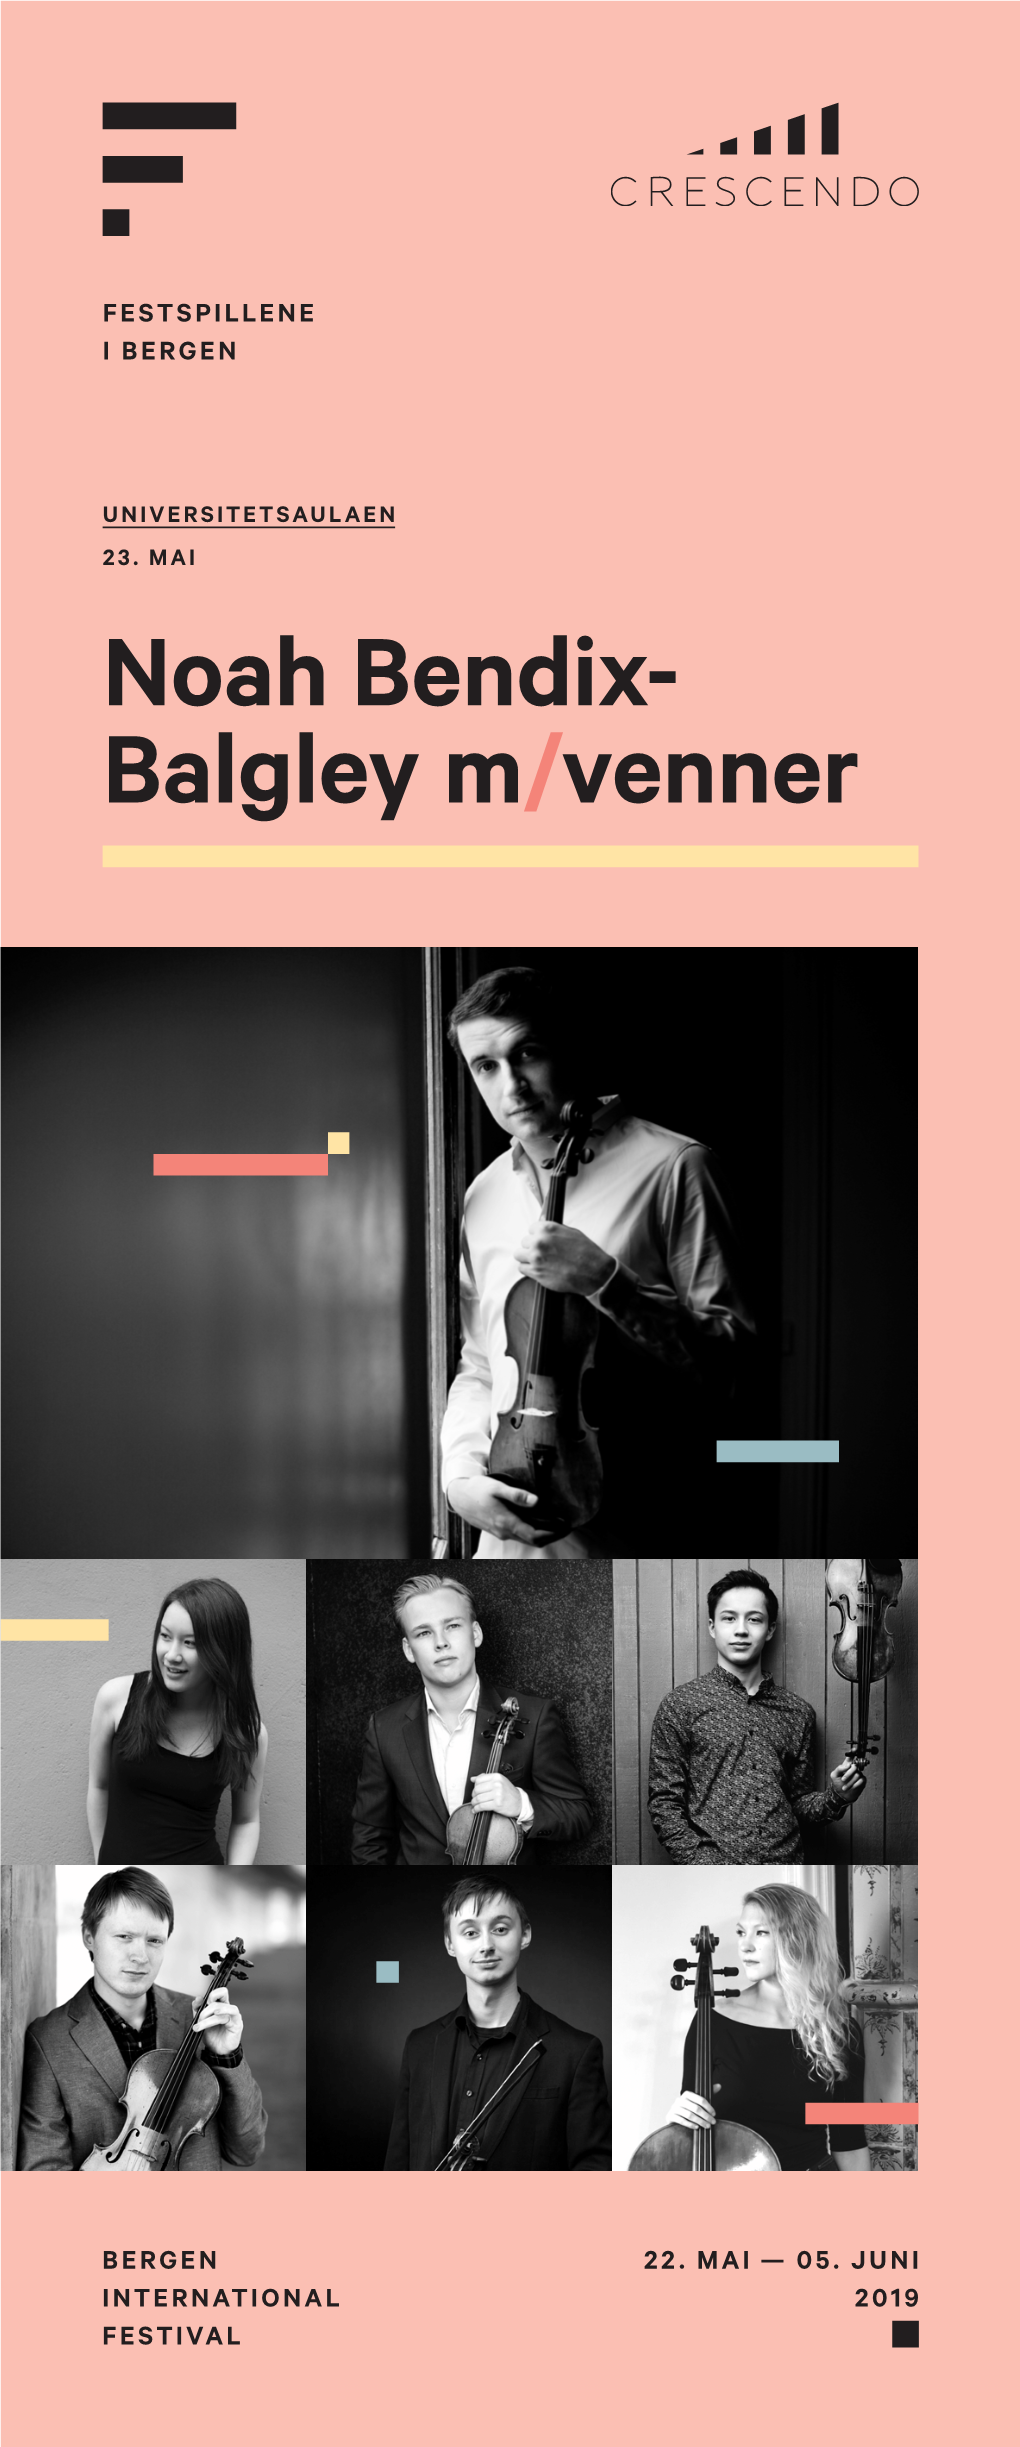 Noah Bendix-Balgley M/Venner (Crescendo)